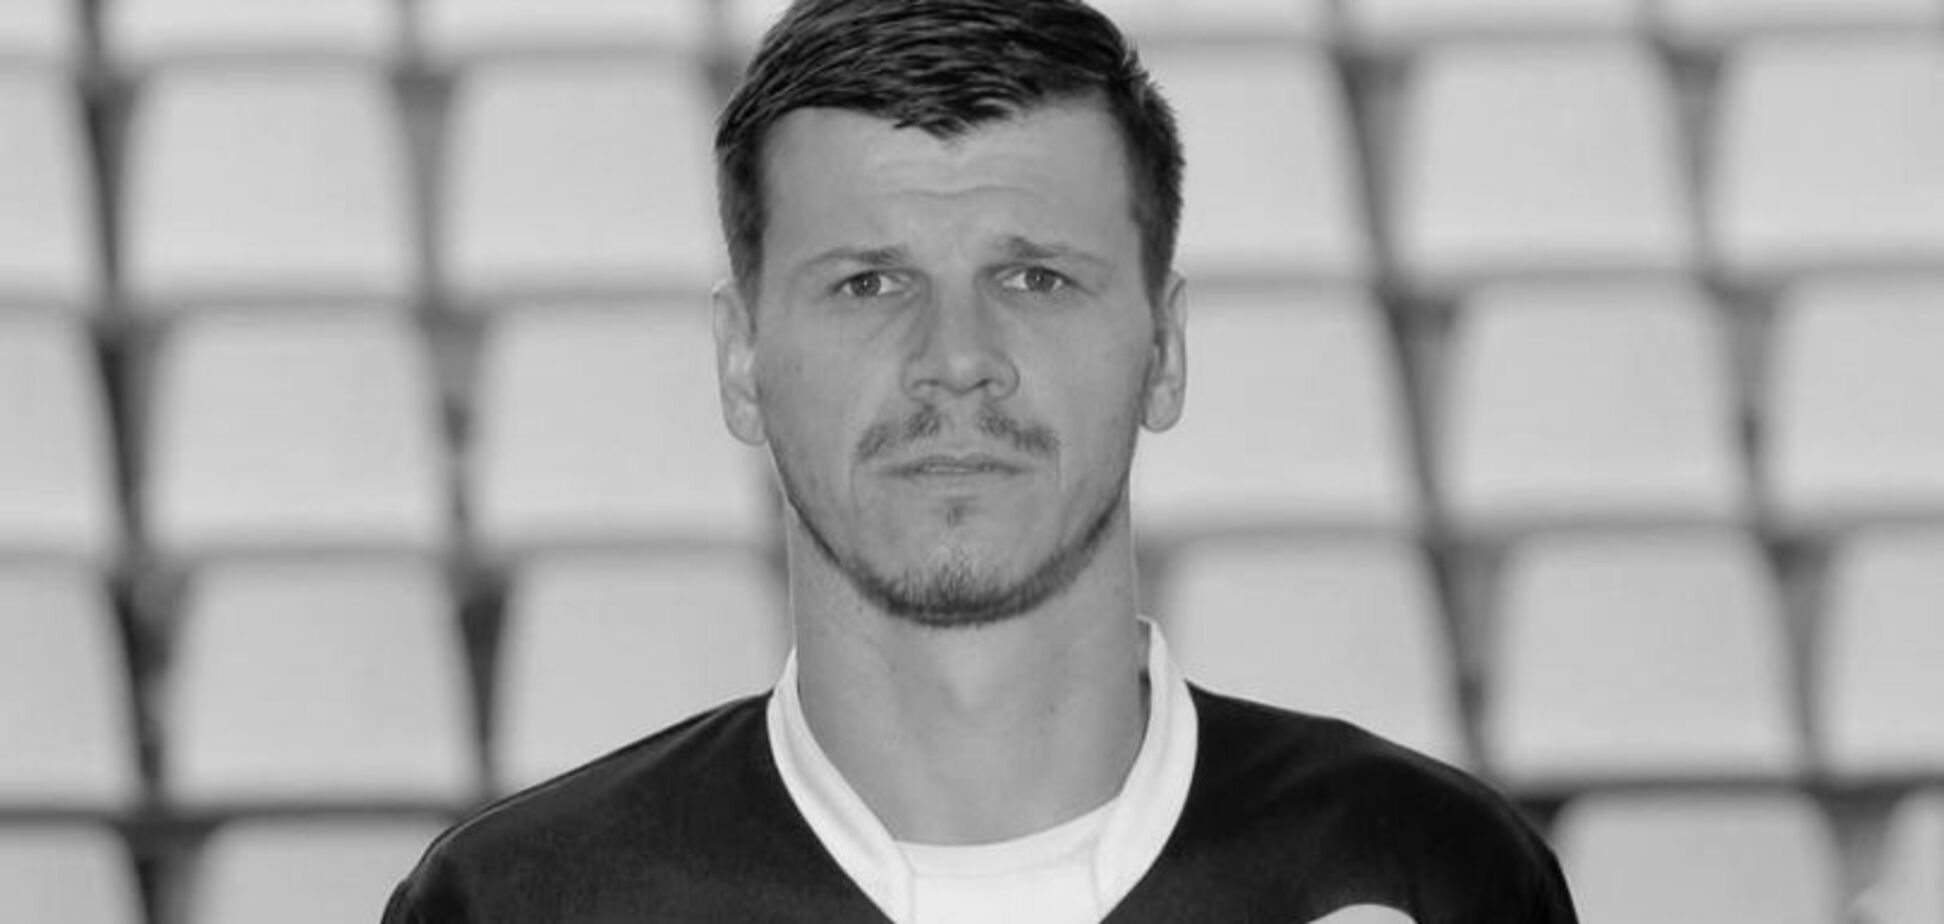 Тело в лесу: в Словакии нашли мертвым известного футболиста